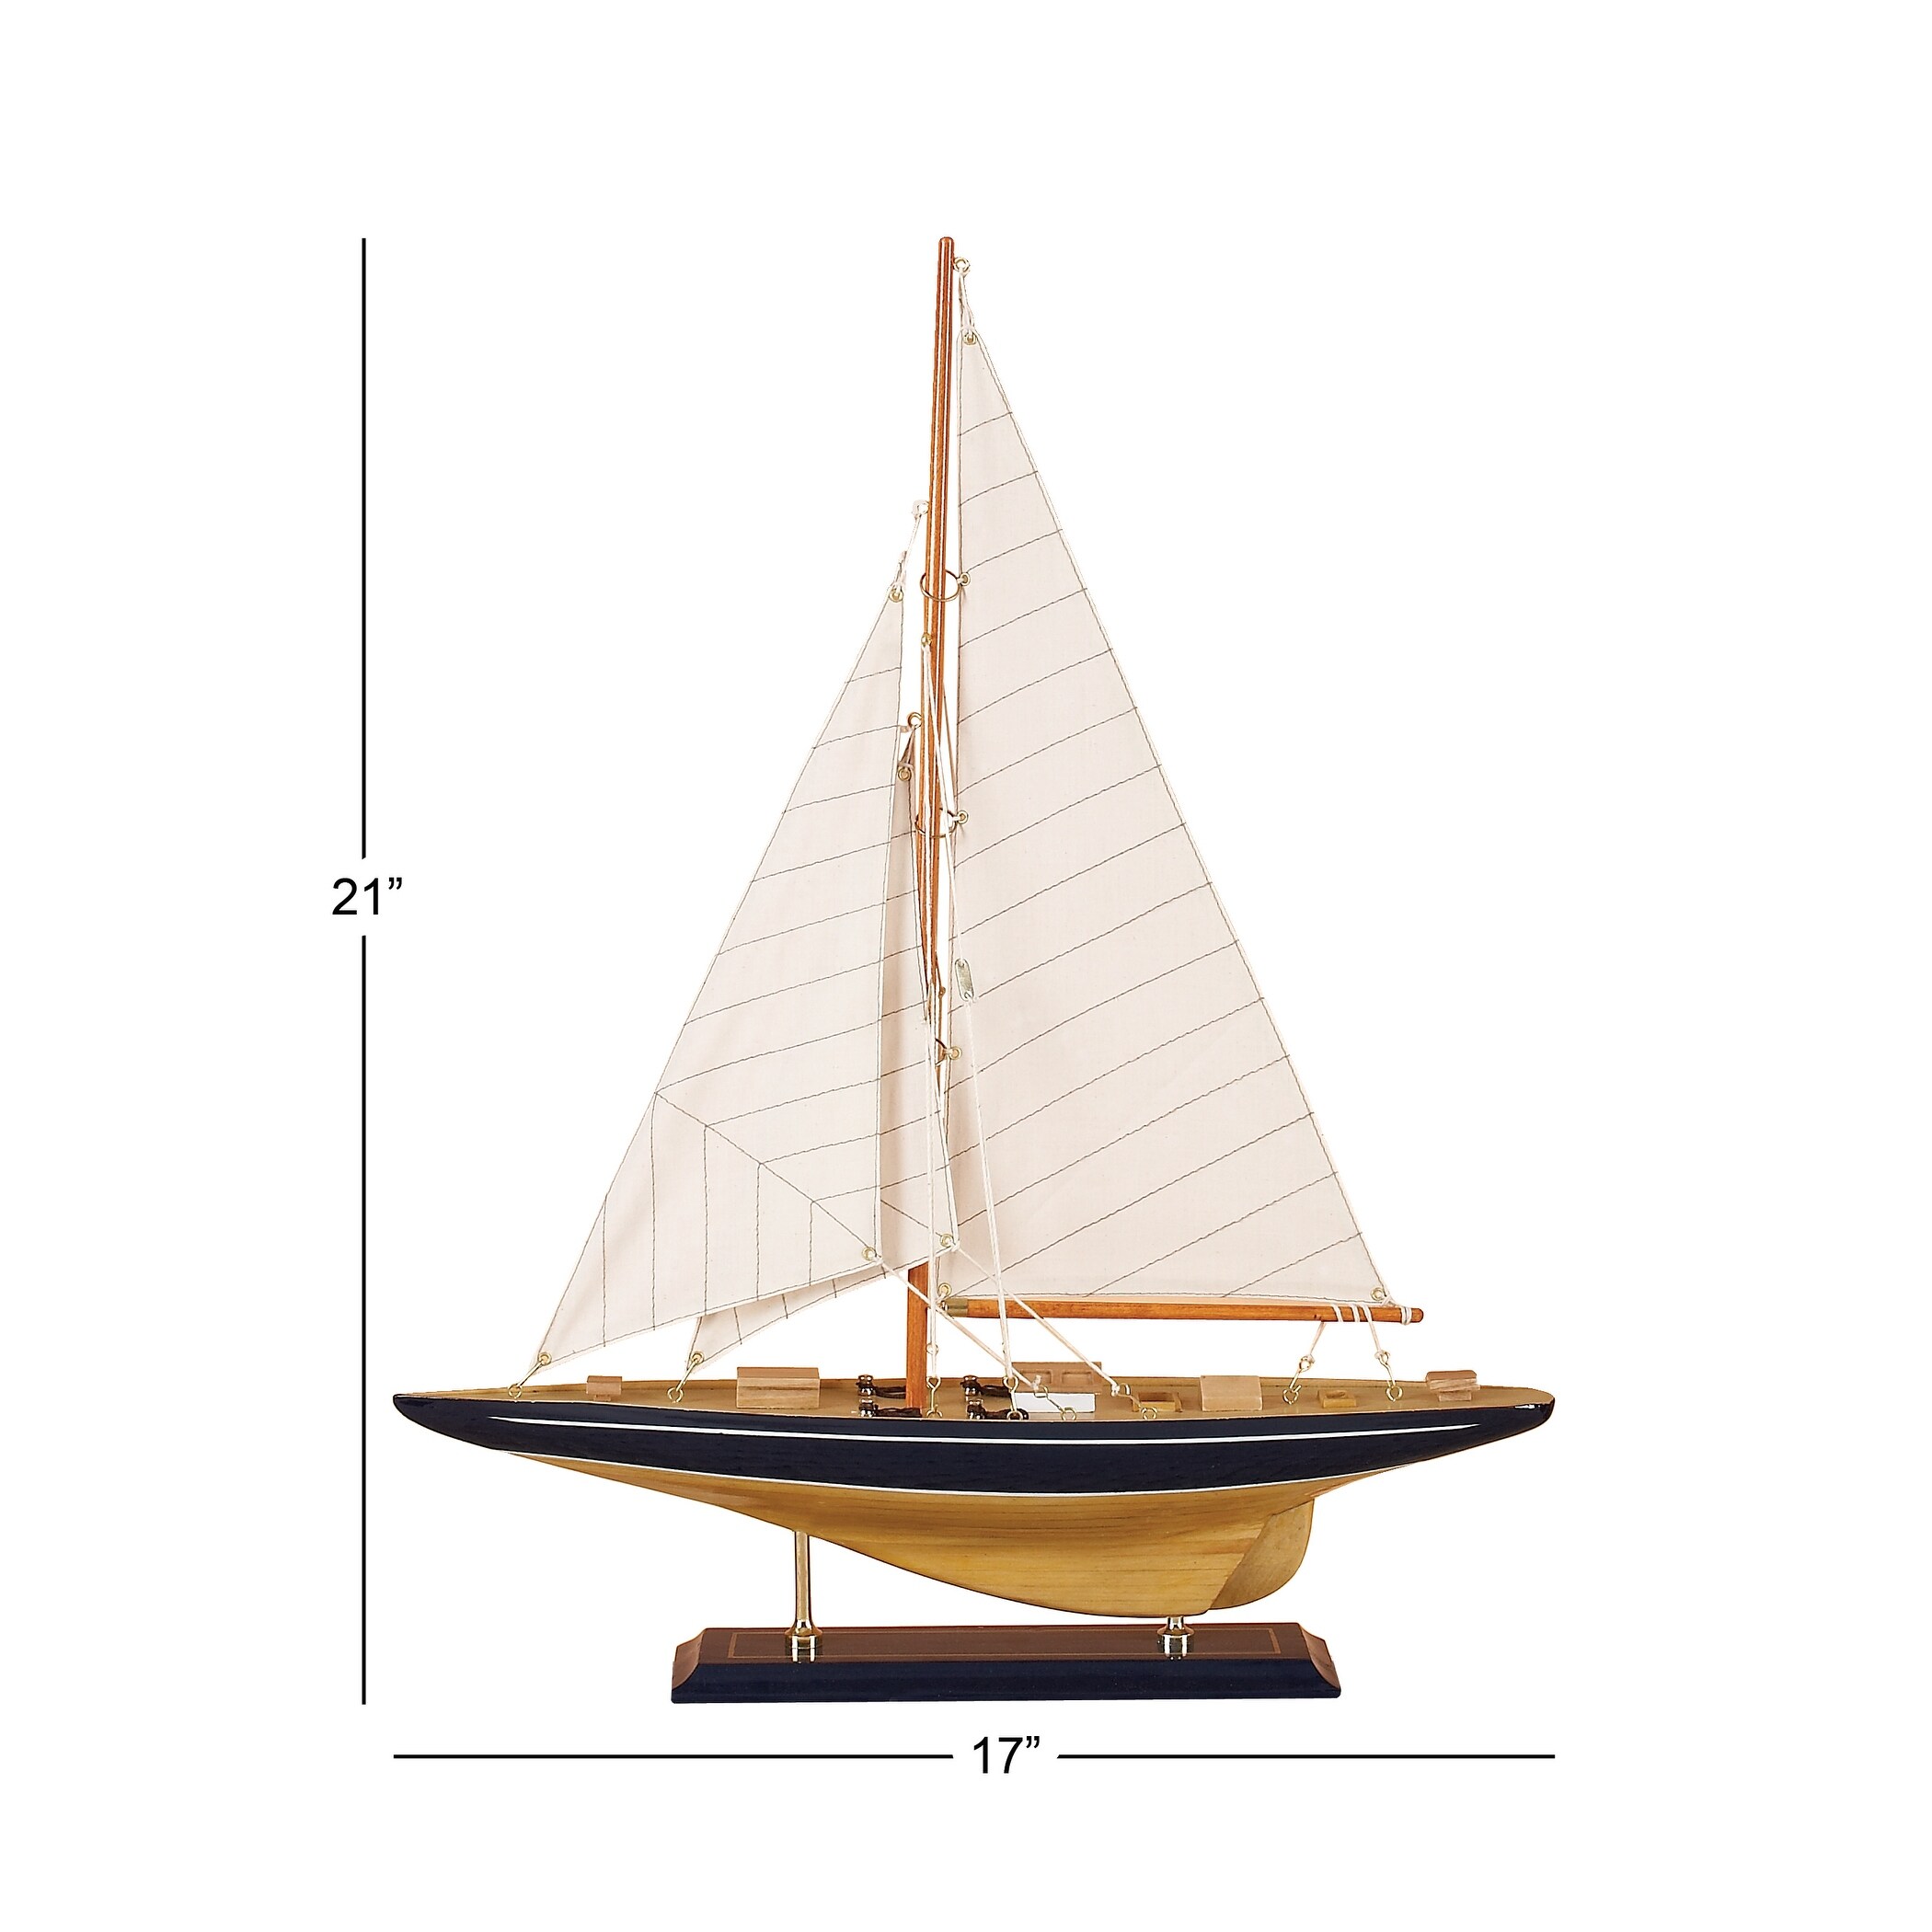 Beige Birch Coastal Sculpture Sail Boat 21 x 17 x 4 - 17 x 3.50 x 21